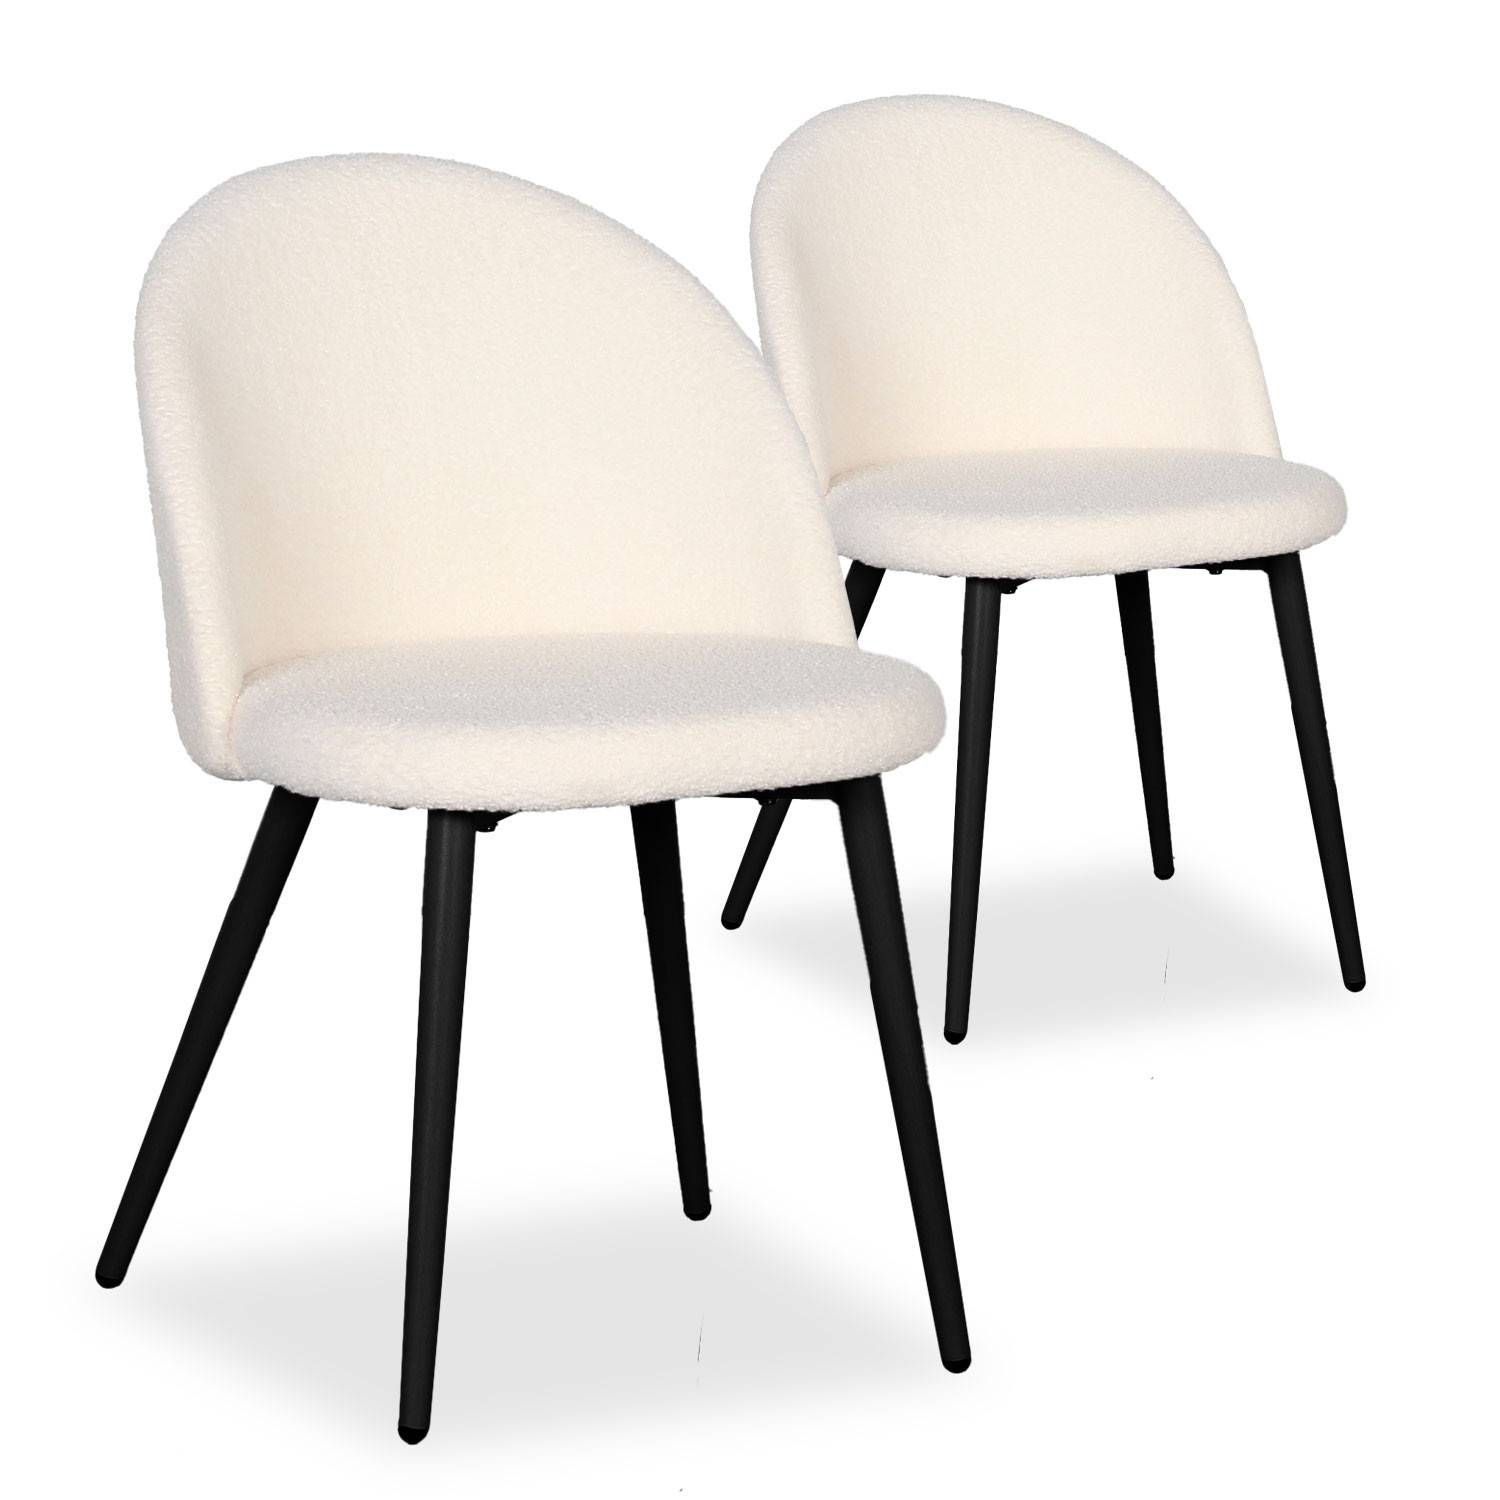 Lote de 2 sillas Maury de metal negro con tela efecto borrego crema